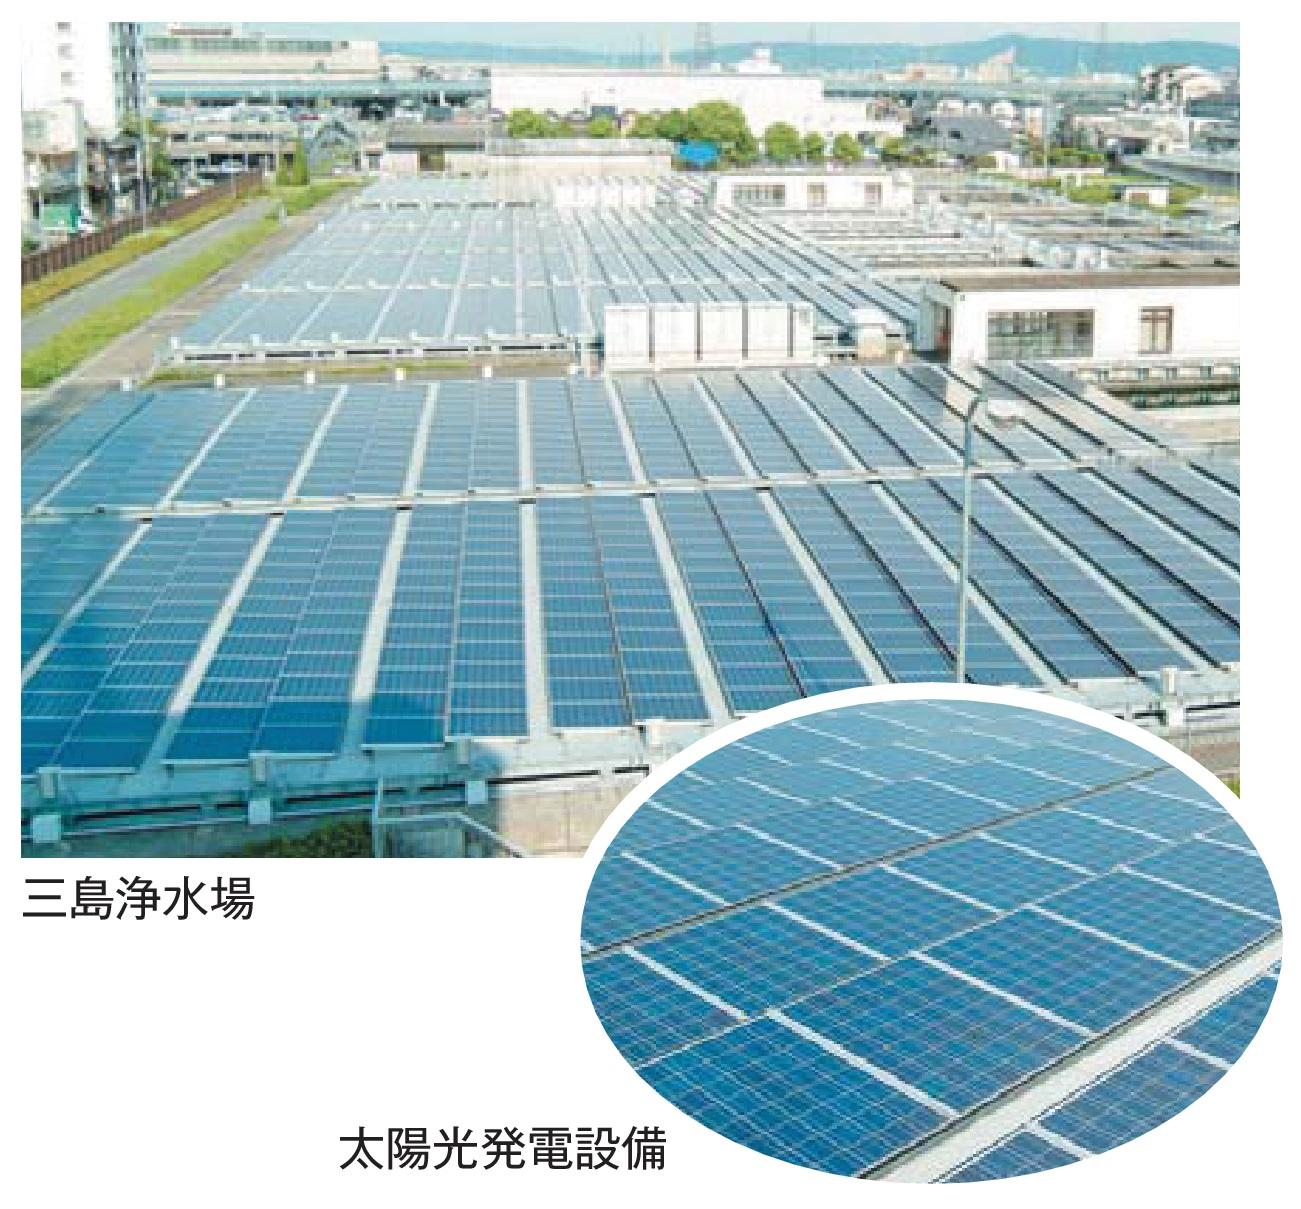 沢山の太陽電池パネルが敷地に等間隔に設置されていてる三島浄水場と、太陽光発電設備のパネルのアップの写真